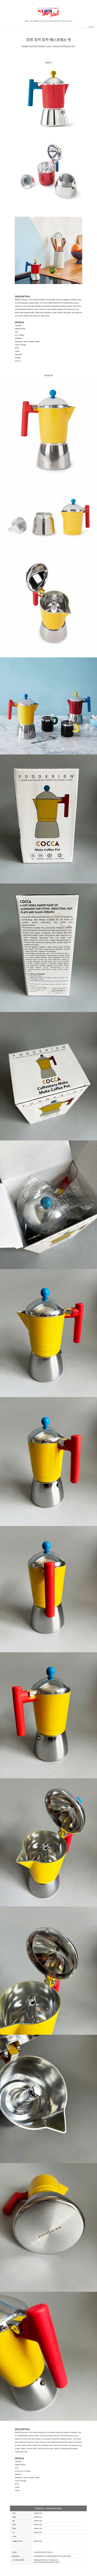 Cocca Moka Espresso Pot by Matteo Monni | Multicolor